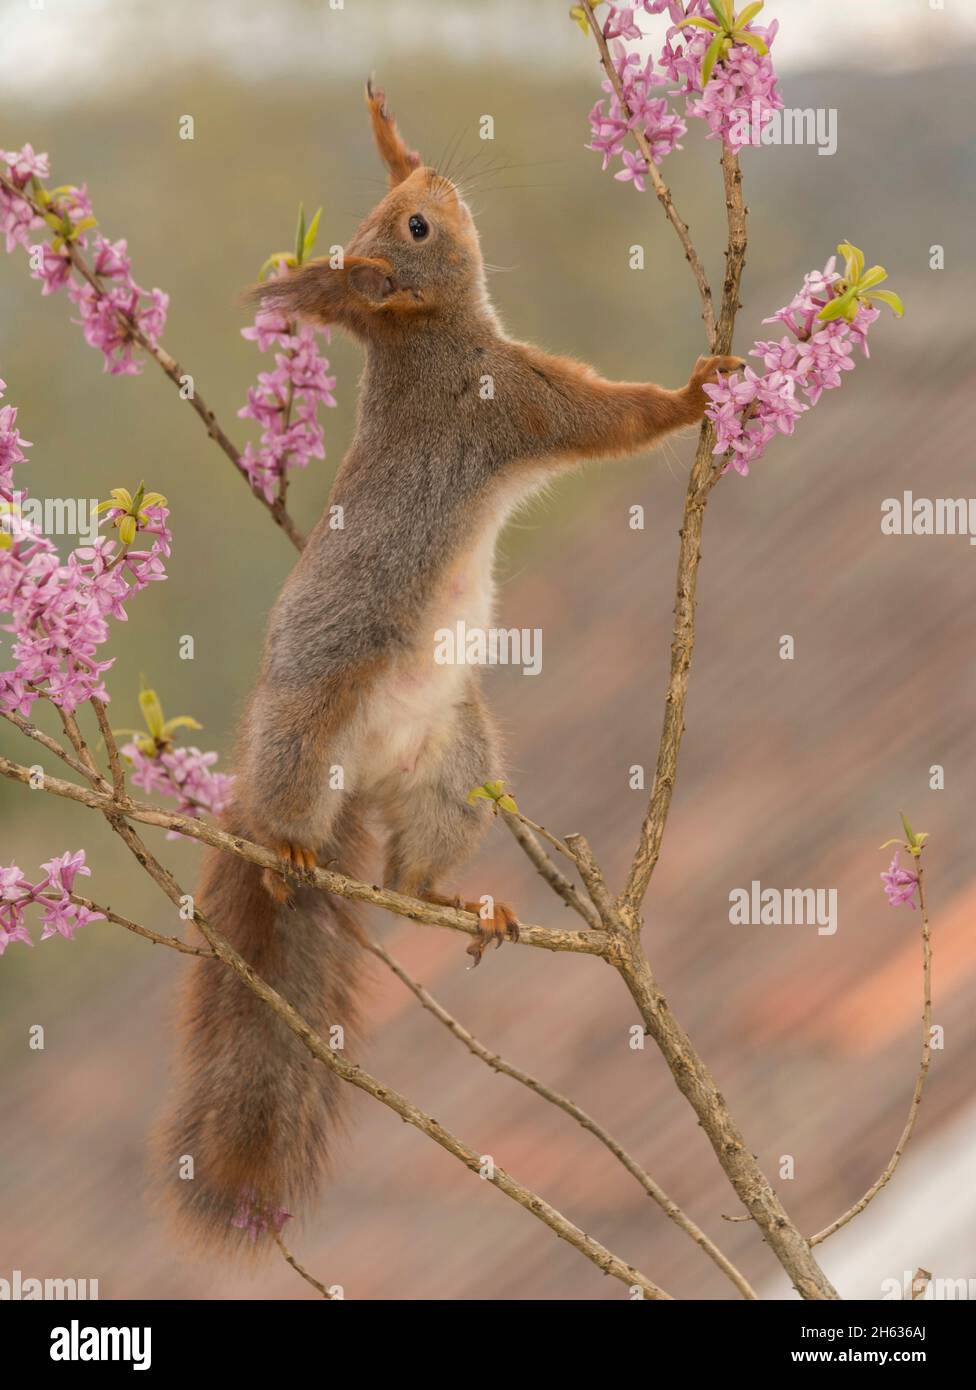 Nahaufnahme des roten Eichhörnchens, das auf Ästen steht und die Blüten sich nach oben streckten Stockfoto